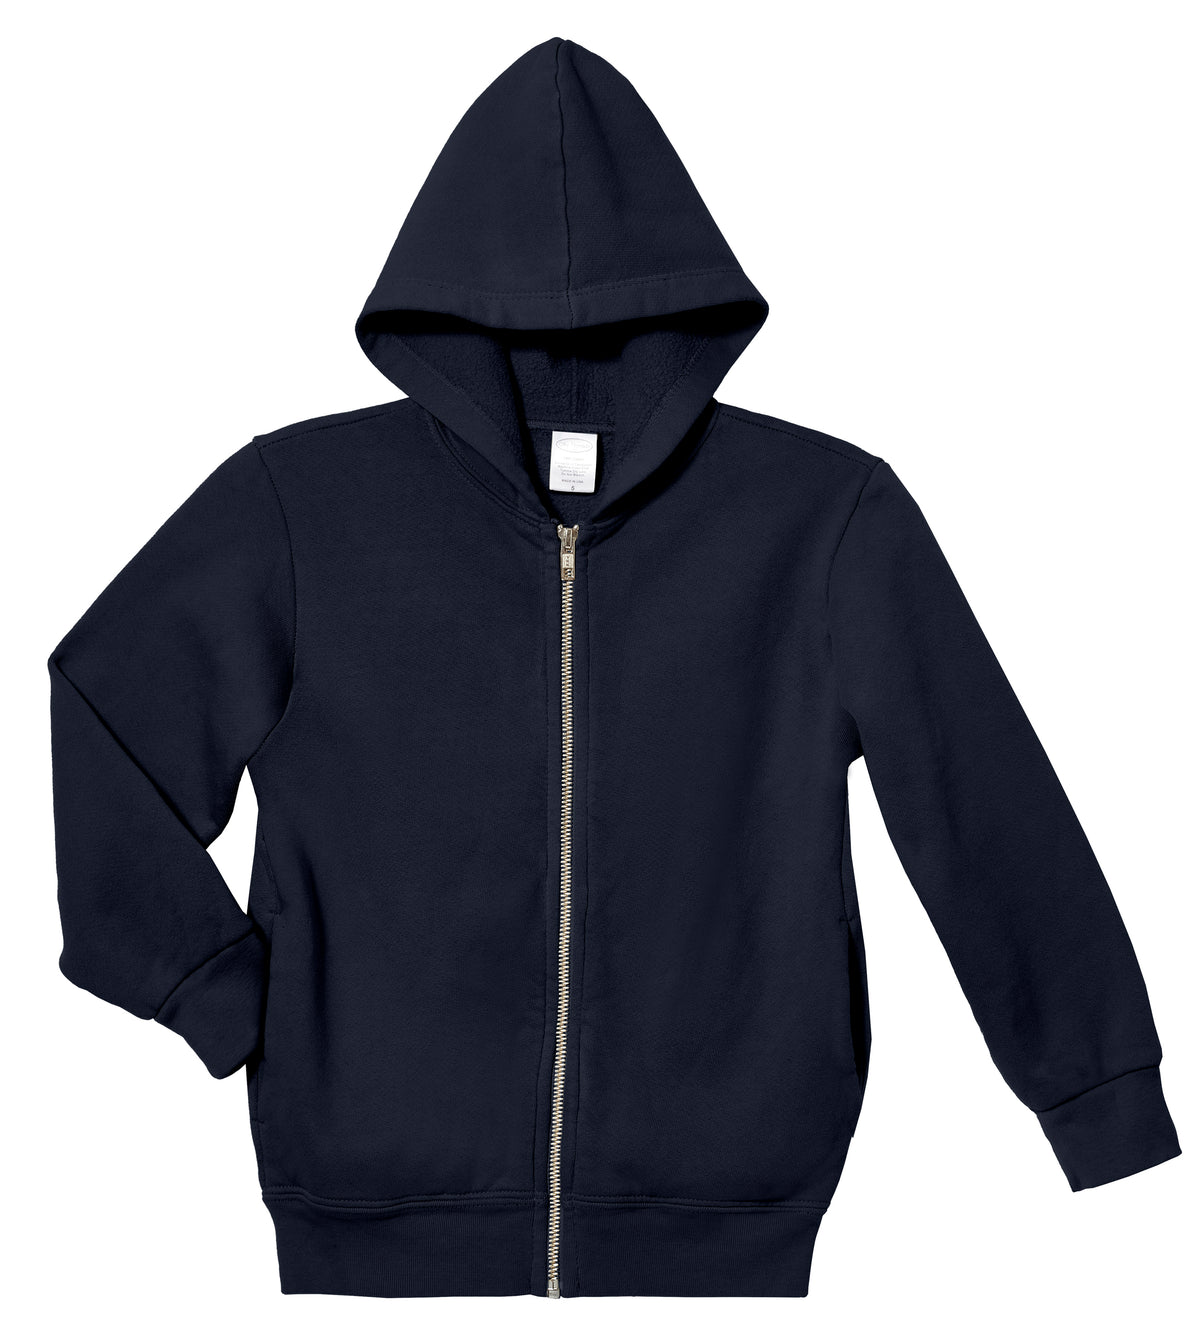 Soft &amp; Cozy 100% Cotton Fleece Zip Hoodie with Inner Pockets | Dark Navy